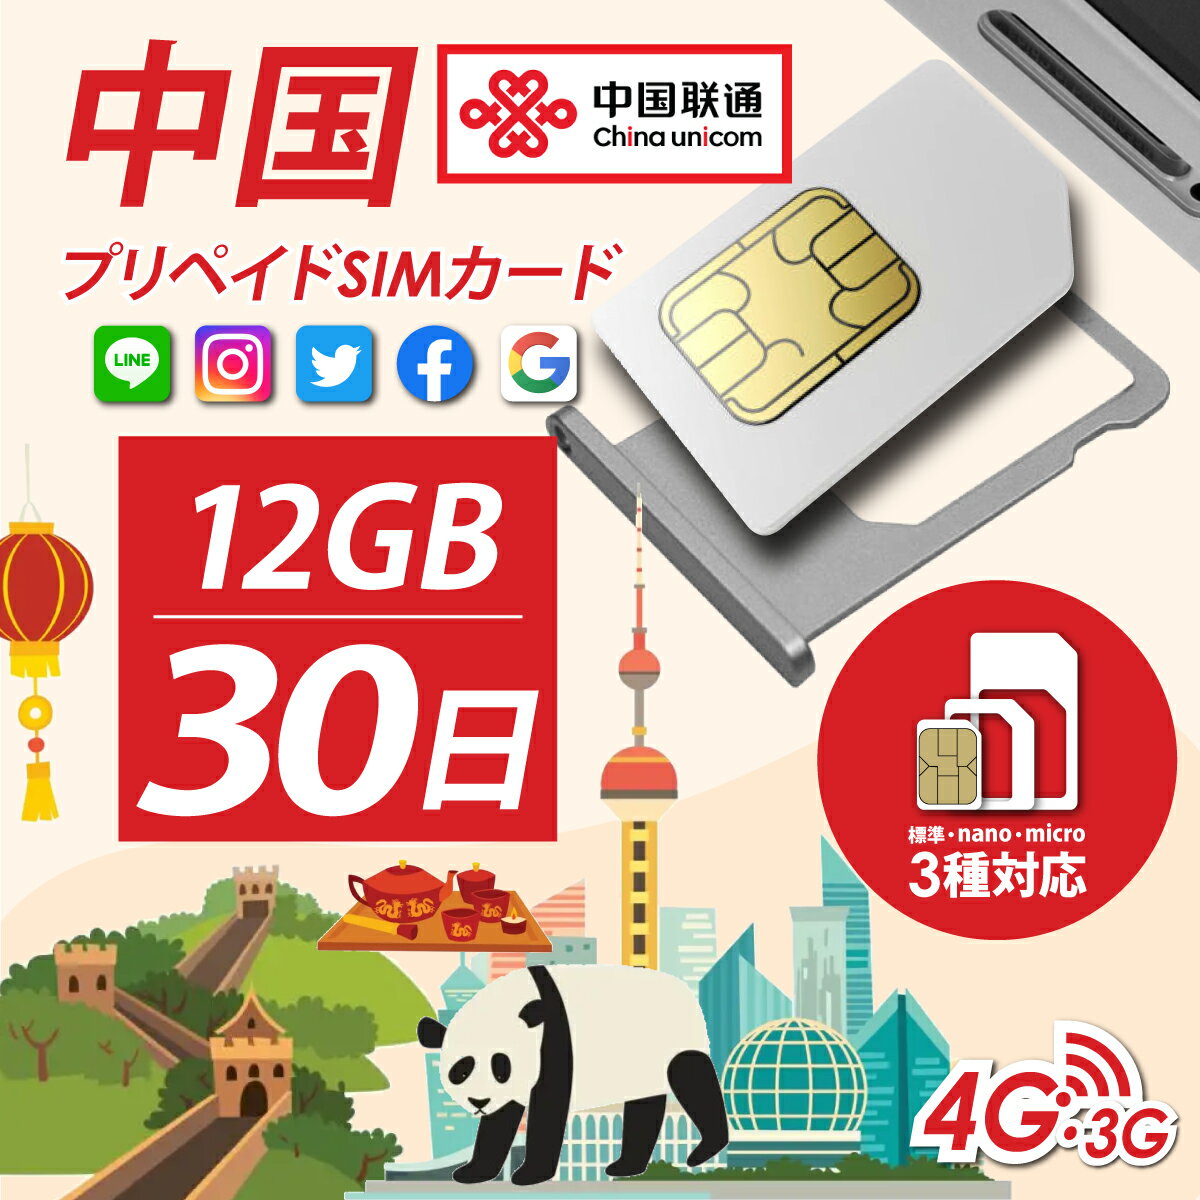 中国、マカオ プリペイドSIM 30日/12GBデータ定額　販売開始！！！ 台湾では使用できません。 中国国内、Google、LINE、フェイスブックなどご利用可能です！ 複数枚買うならお得な3枚セット・5枚セットもございます！ ※香港では利用できませんのでご注意ください。 China Unicom Hong Kong 簡易日本語マニュアル付き！ nano SIM、micro SIM、通常SIM対応です！ 中国全域、マカオでデータ定額！ 中国全域、マカオ プリペイド SIM 大中華 30日間12GBデータ定額4G/3Gデータ通信SIMカード ！ 中国全域、マカオ現地で使えるプリペイドSIMカード、 大中華 30日間12GBデータなら、定額データ通信も格安に簡単に使用可能です。&nbsp;&nbsp; 中国全域、マカオ　プリペイドSIM　4G/3Gデータ通信定額 SIMの特徴 ■SIMサイズ：通常＆マイクロ＆Nano ■開通作業：現地でデータ通信を開始すれば開通 ■パスポート登録：なし ■有効期限：利用開始日から30日間 ■通話・SMS：不可 ■データ通信：12GB　※12GB超過後は通信不可 ■テザリング：可 ■対応周波数 ┗中国全域:G4/LTE: Band3 (1800 MHz) Band8 (900 MHz) Band40 (2300 MHz) :G3: Band1(2100) ┗マカオ:G4/LTE: Band3(1800MHz）Band40（2300MHz） :G3: Band1(2100MHz) ■延長：公式サイトでクレジットカードのみ、チャージ可。（詳細は公式サイトにてご確認ください。） ■APN：3gnet ※こちらのSIMカードは香港通信会社のSIMカードとなります為、端末のデータローミングはオンにしてご利用くださいませ。 （香港ではご利用できませんのでご注意くださいませ。） 下記項目に該当する端末に関しまして、弊社販売のSIMカードにおける動作に対し、一切の保証を致しかねます。 それらについてのお問い合わせに関しましても、一切お答え出来ません。 ・日本の携帯電話及びスマートフォンに対し、SIMロック解除を行った端末 ・SIMロック解除アダプターなどのツール類（ソフトウェア類も含む）を使用しての 　SIMロック解除端末 ・SIMカードを物理的にカットなどお客様による形状変更を行っての使用 &nbsp; また、上記理由においての返品、交換、返金等にも一切応じることが出来ませんので、予めご理解ご容赦のほど宜しくお願い致します。 ■SIMカードの保証に関しまして■ 当社でのSIMカードの保証は1か月とさせて頂きます。 1か月以内での、有効期限切れ、不具合等に関しましては 当社で対応させて頂きますが、それ以降に発生した場合は 直接、キャリア（通信会社）にお問合せください。 ※有効期限、渡航日などご確認ください。 その他ご不明点は、当社までお問合せくださいませ。